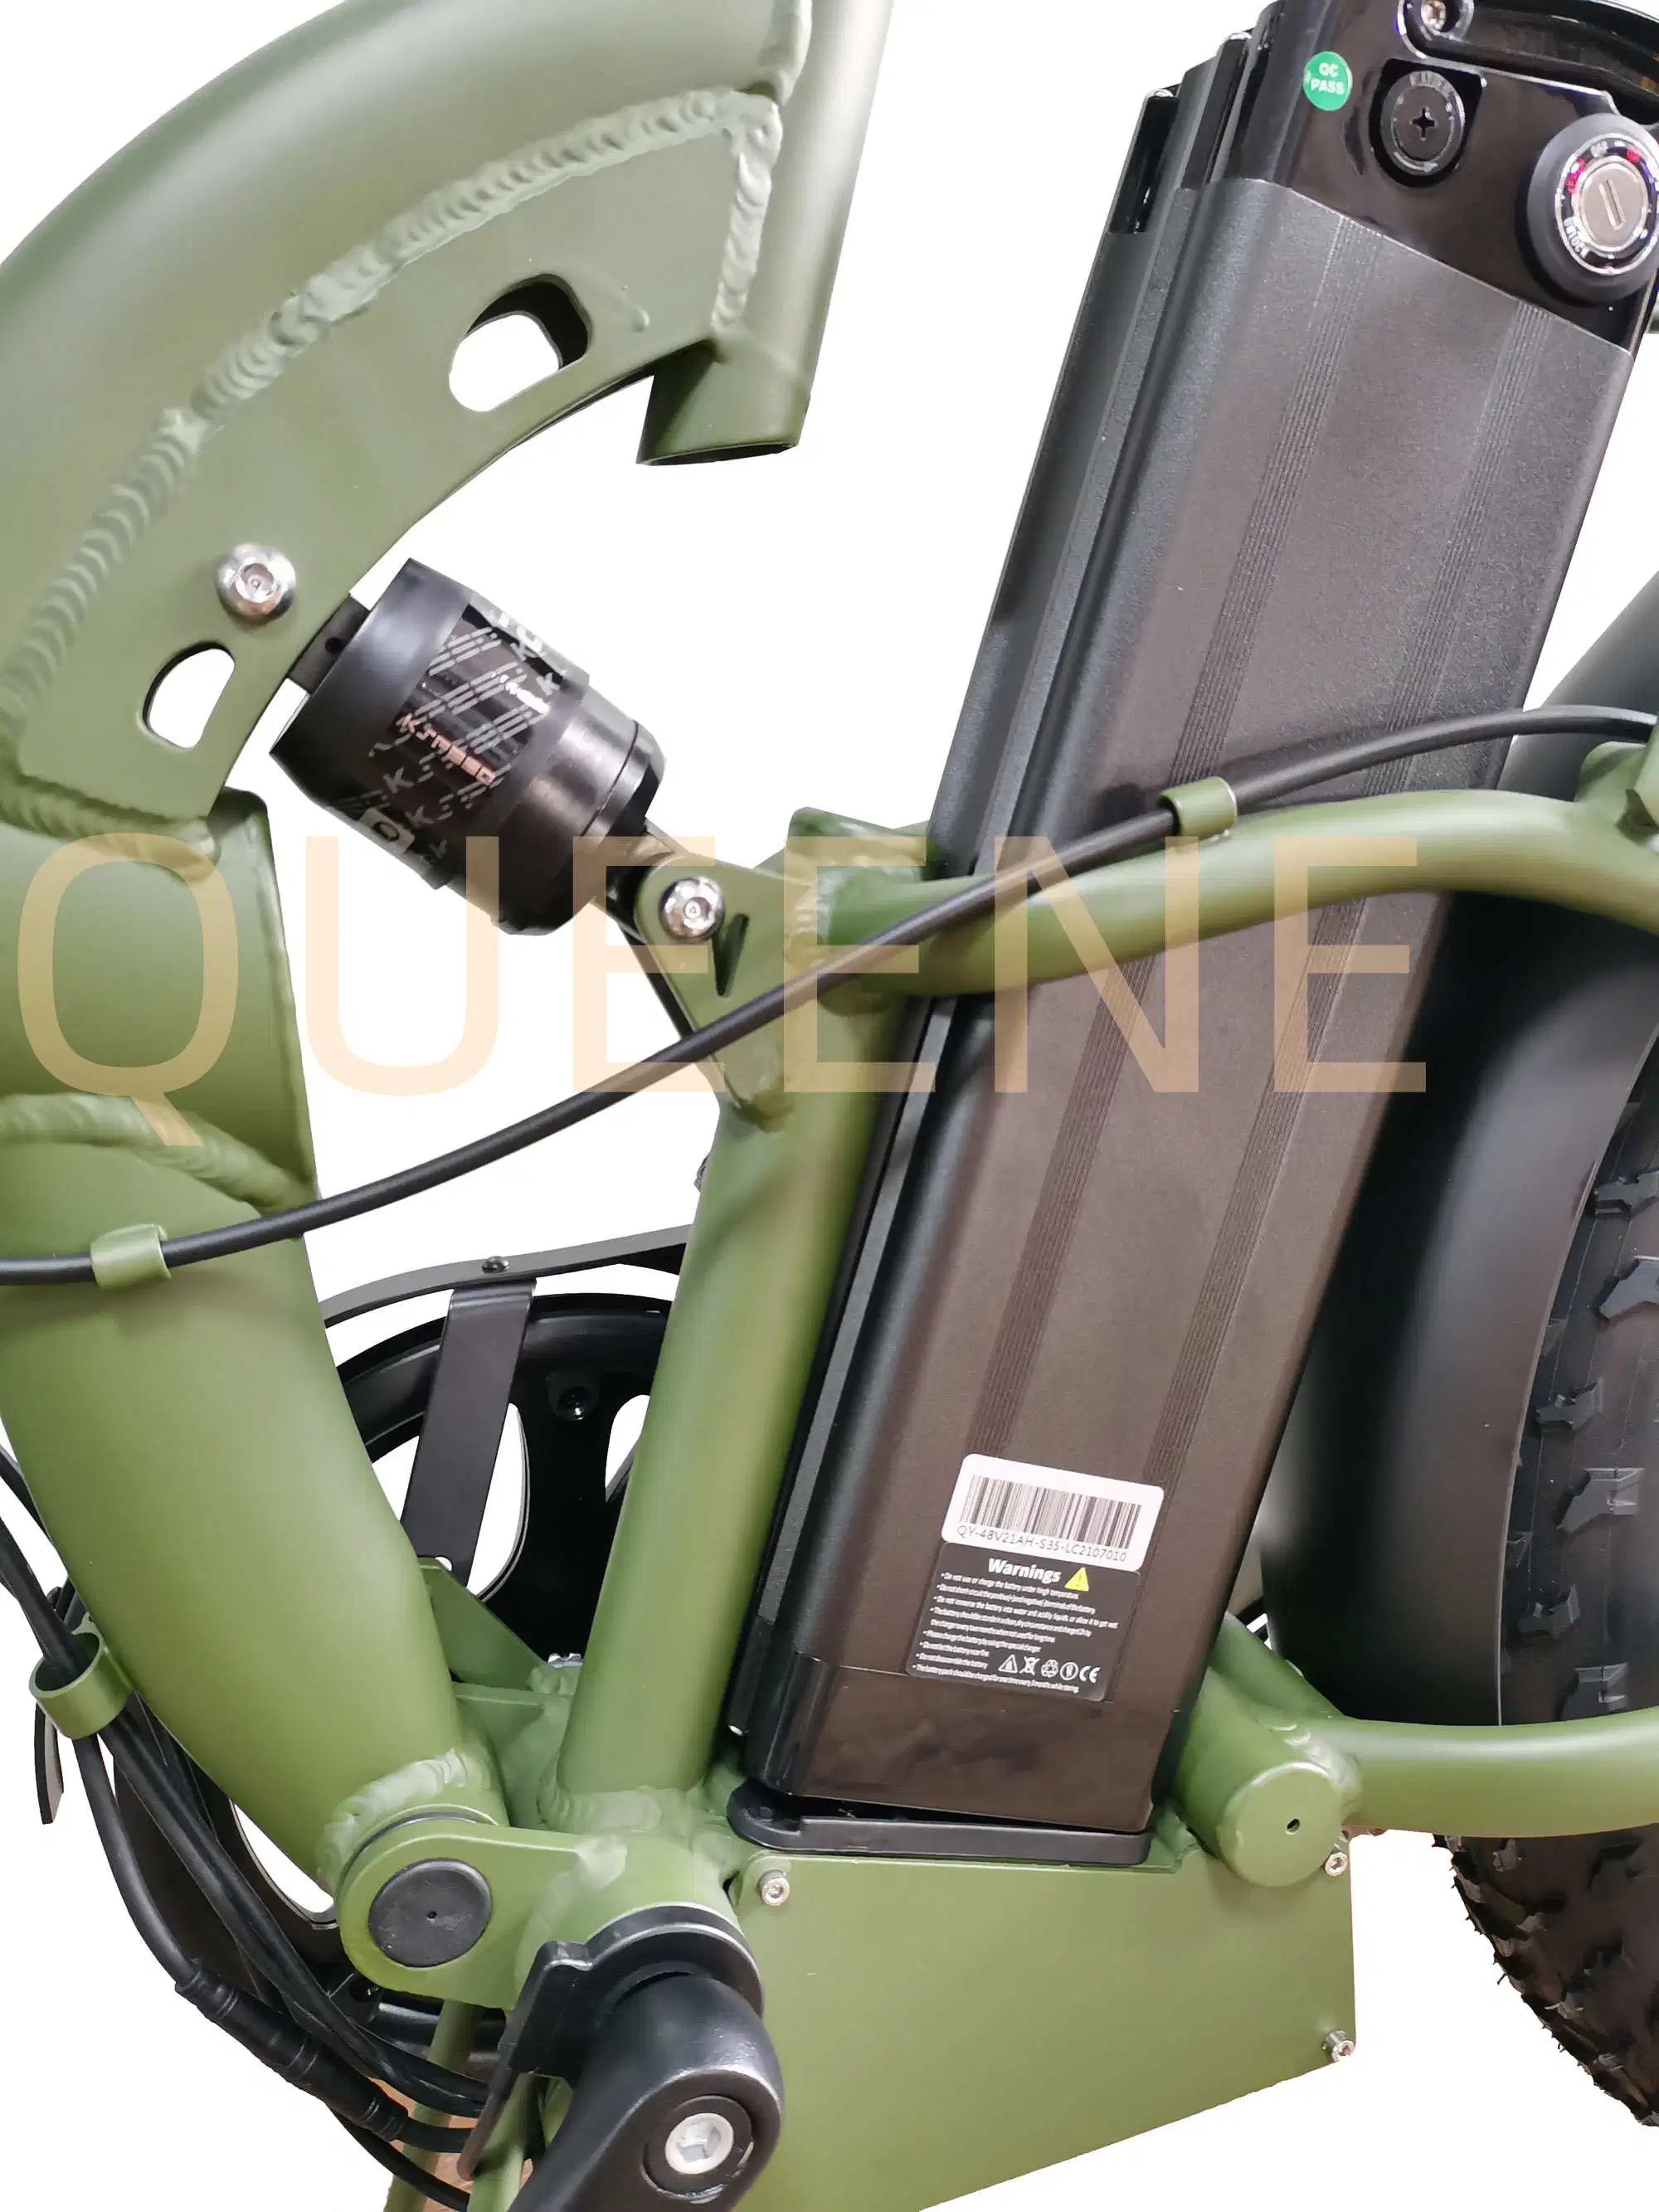 Queene/China Cheap Vintage 750W 1000W E Bike Ebike Motor Dirt Mountain Fat Tire Bicycle Electric Bike